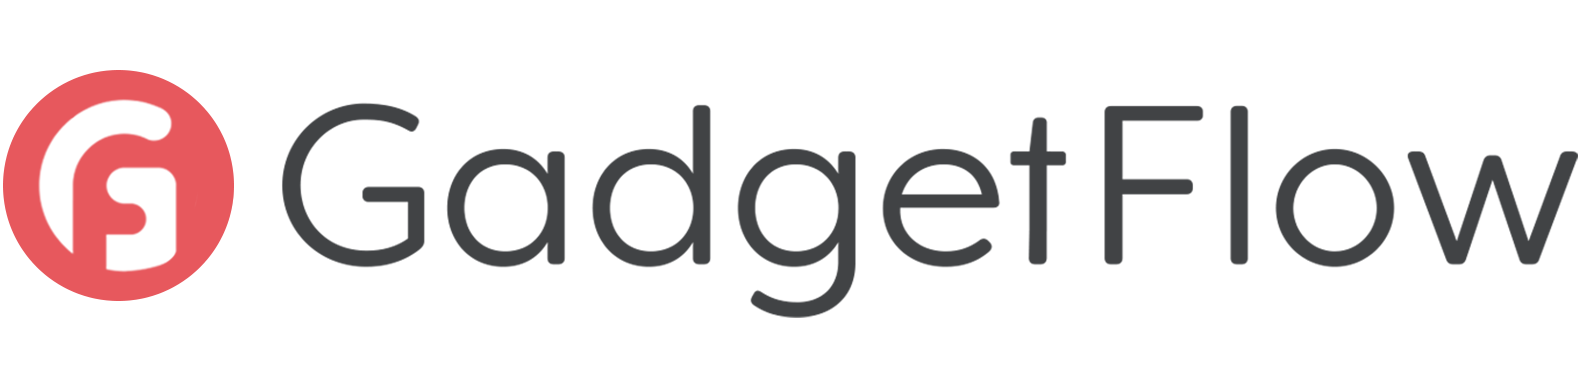 Gadget-Flow-Logo-Main2.webp__PID:90fd5bed-080b-483e-8fc3-c386c41505cd